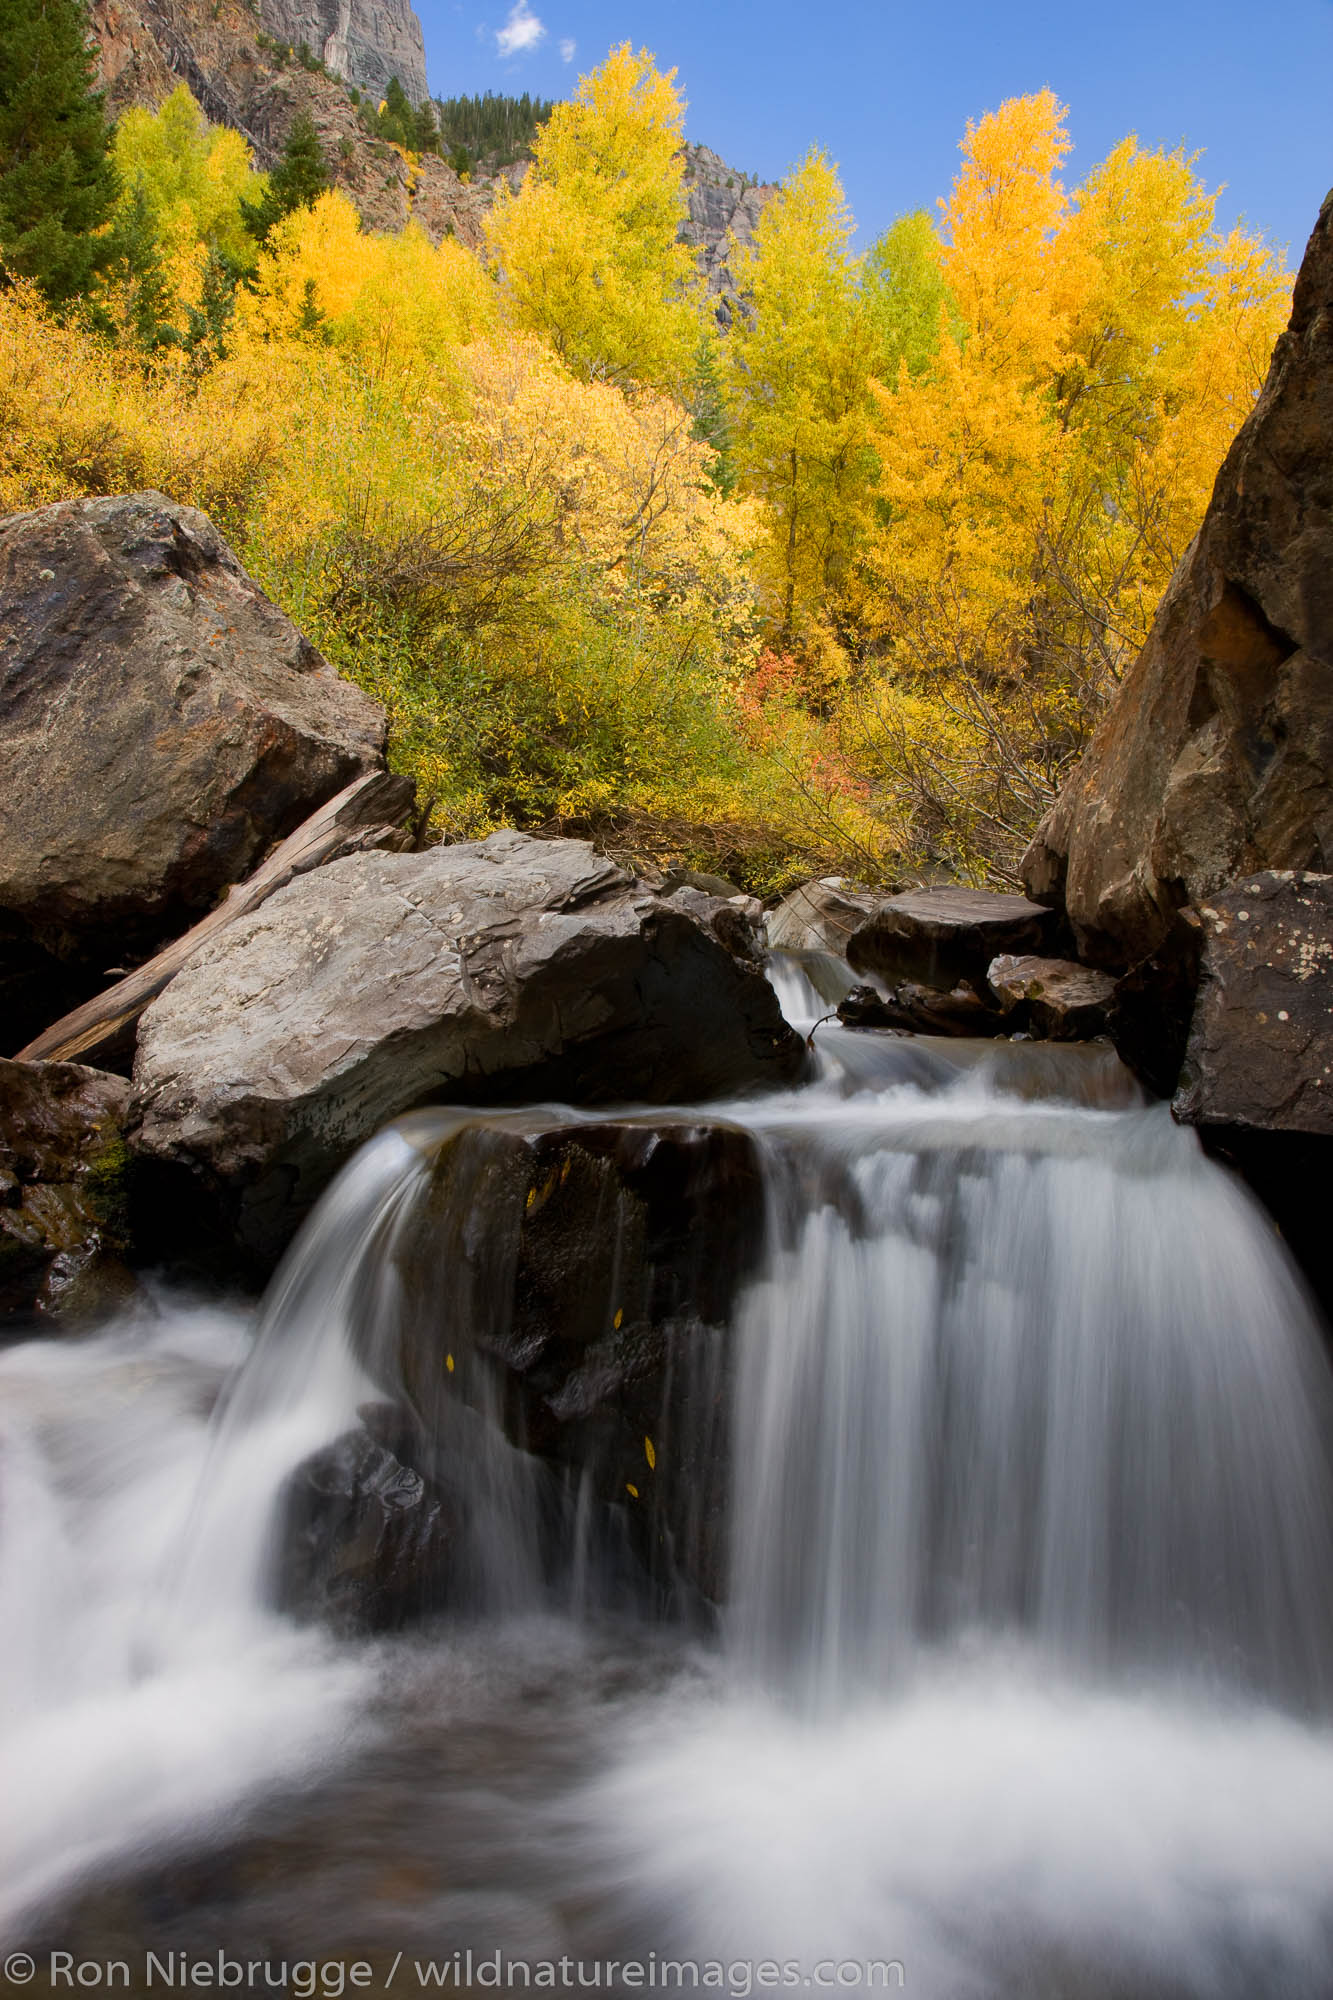 Autumn colors along Bear Creek in the San Juan Mountains, near Ouray, Colorado.